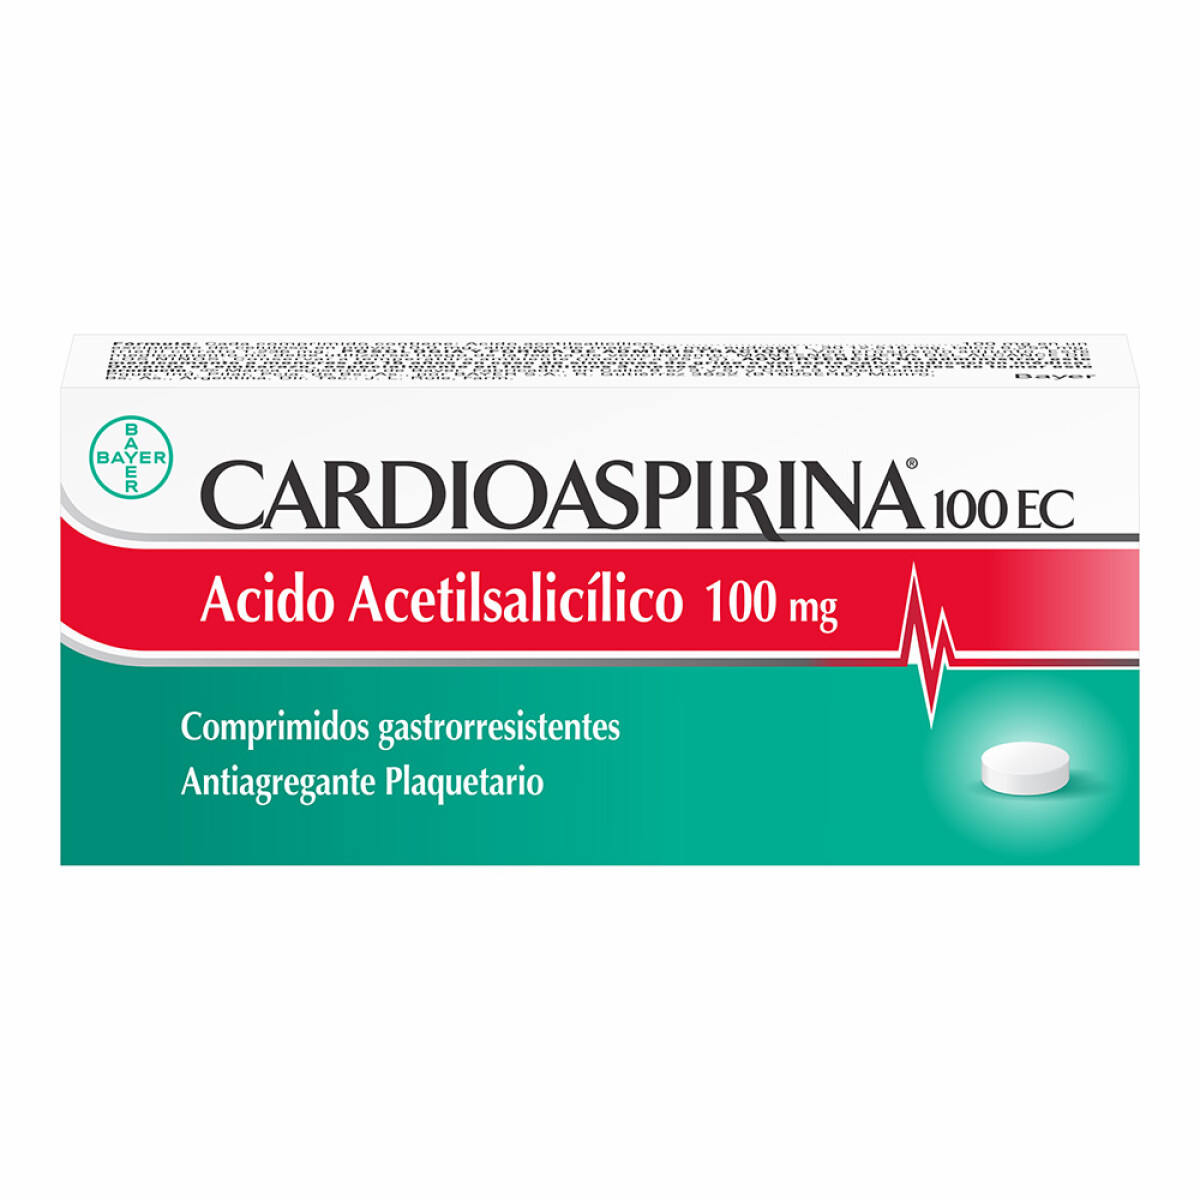 Cardioaspirina 100 EC x 10 comprimidos 